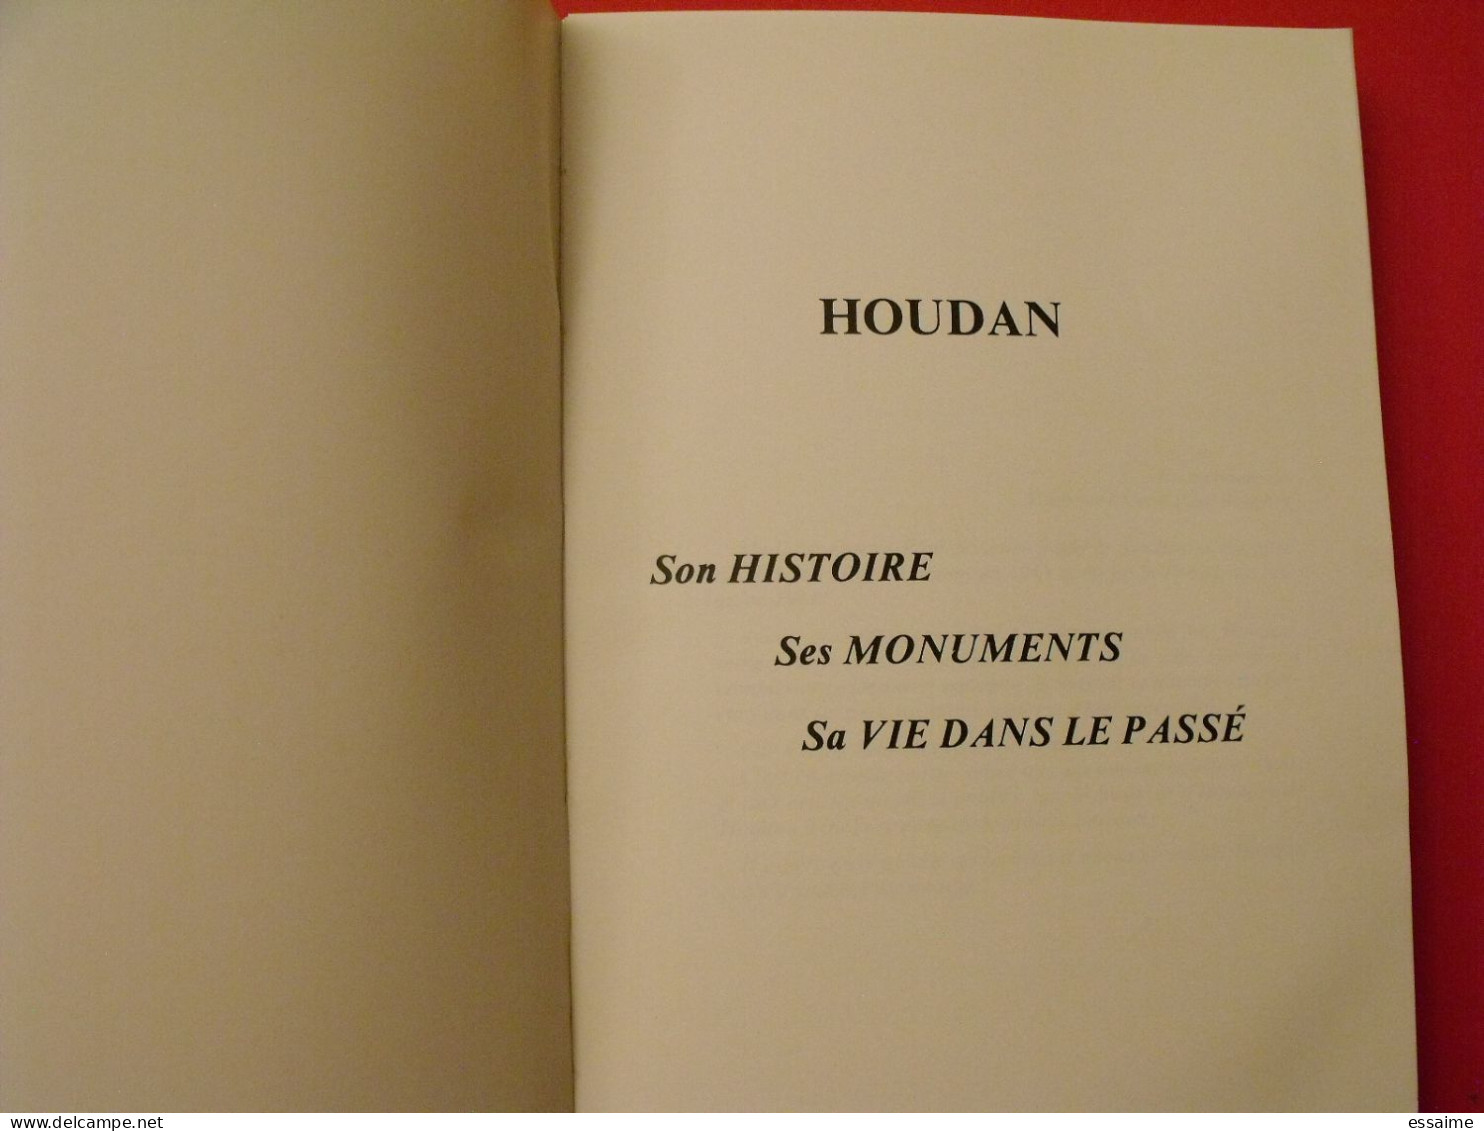 Houdan. Son Histoire, Ses Monuments, Sa Vie Dans Le Passé. 1982 - Ile-de-France